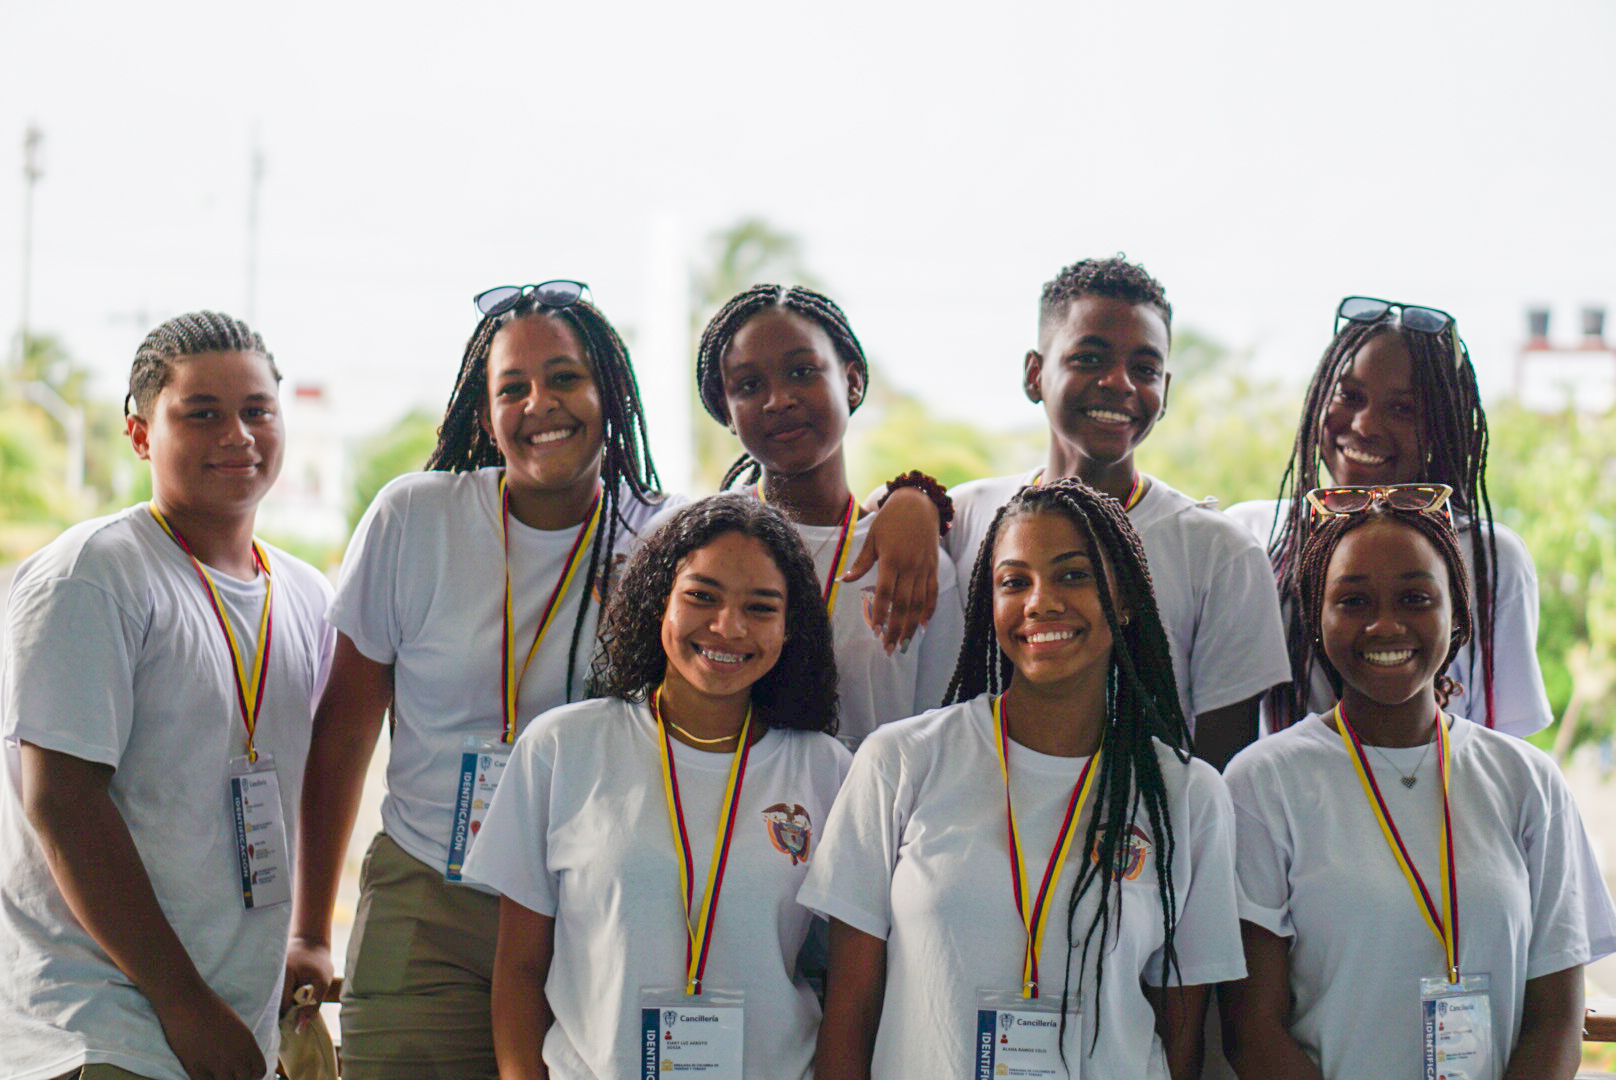 Jóvenes de San Andrés participarán en intercambio de diplomacia deportiva y cultural en Trinidad y Tobago